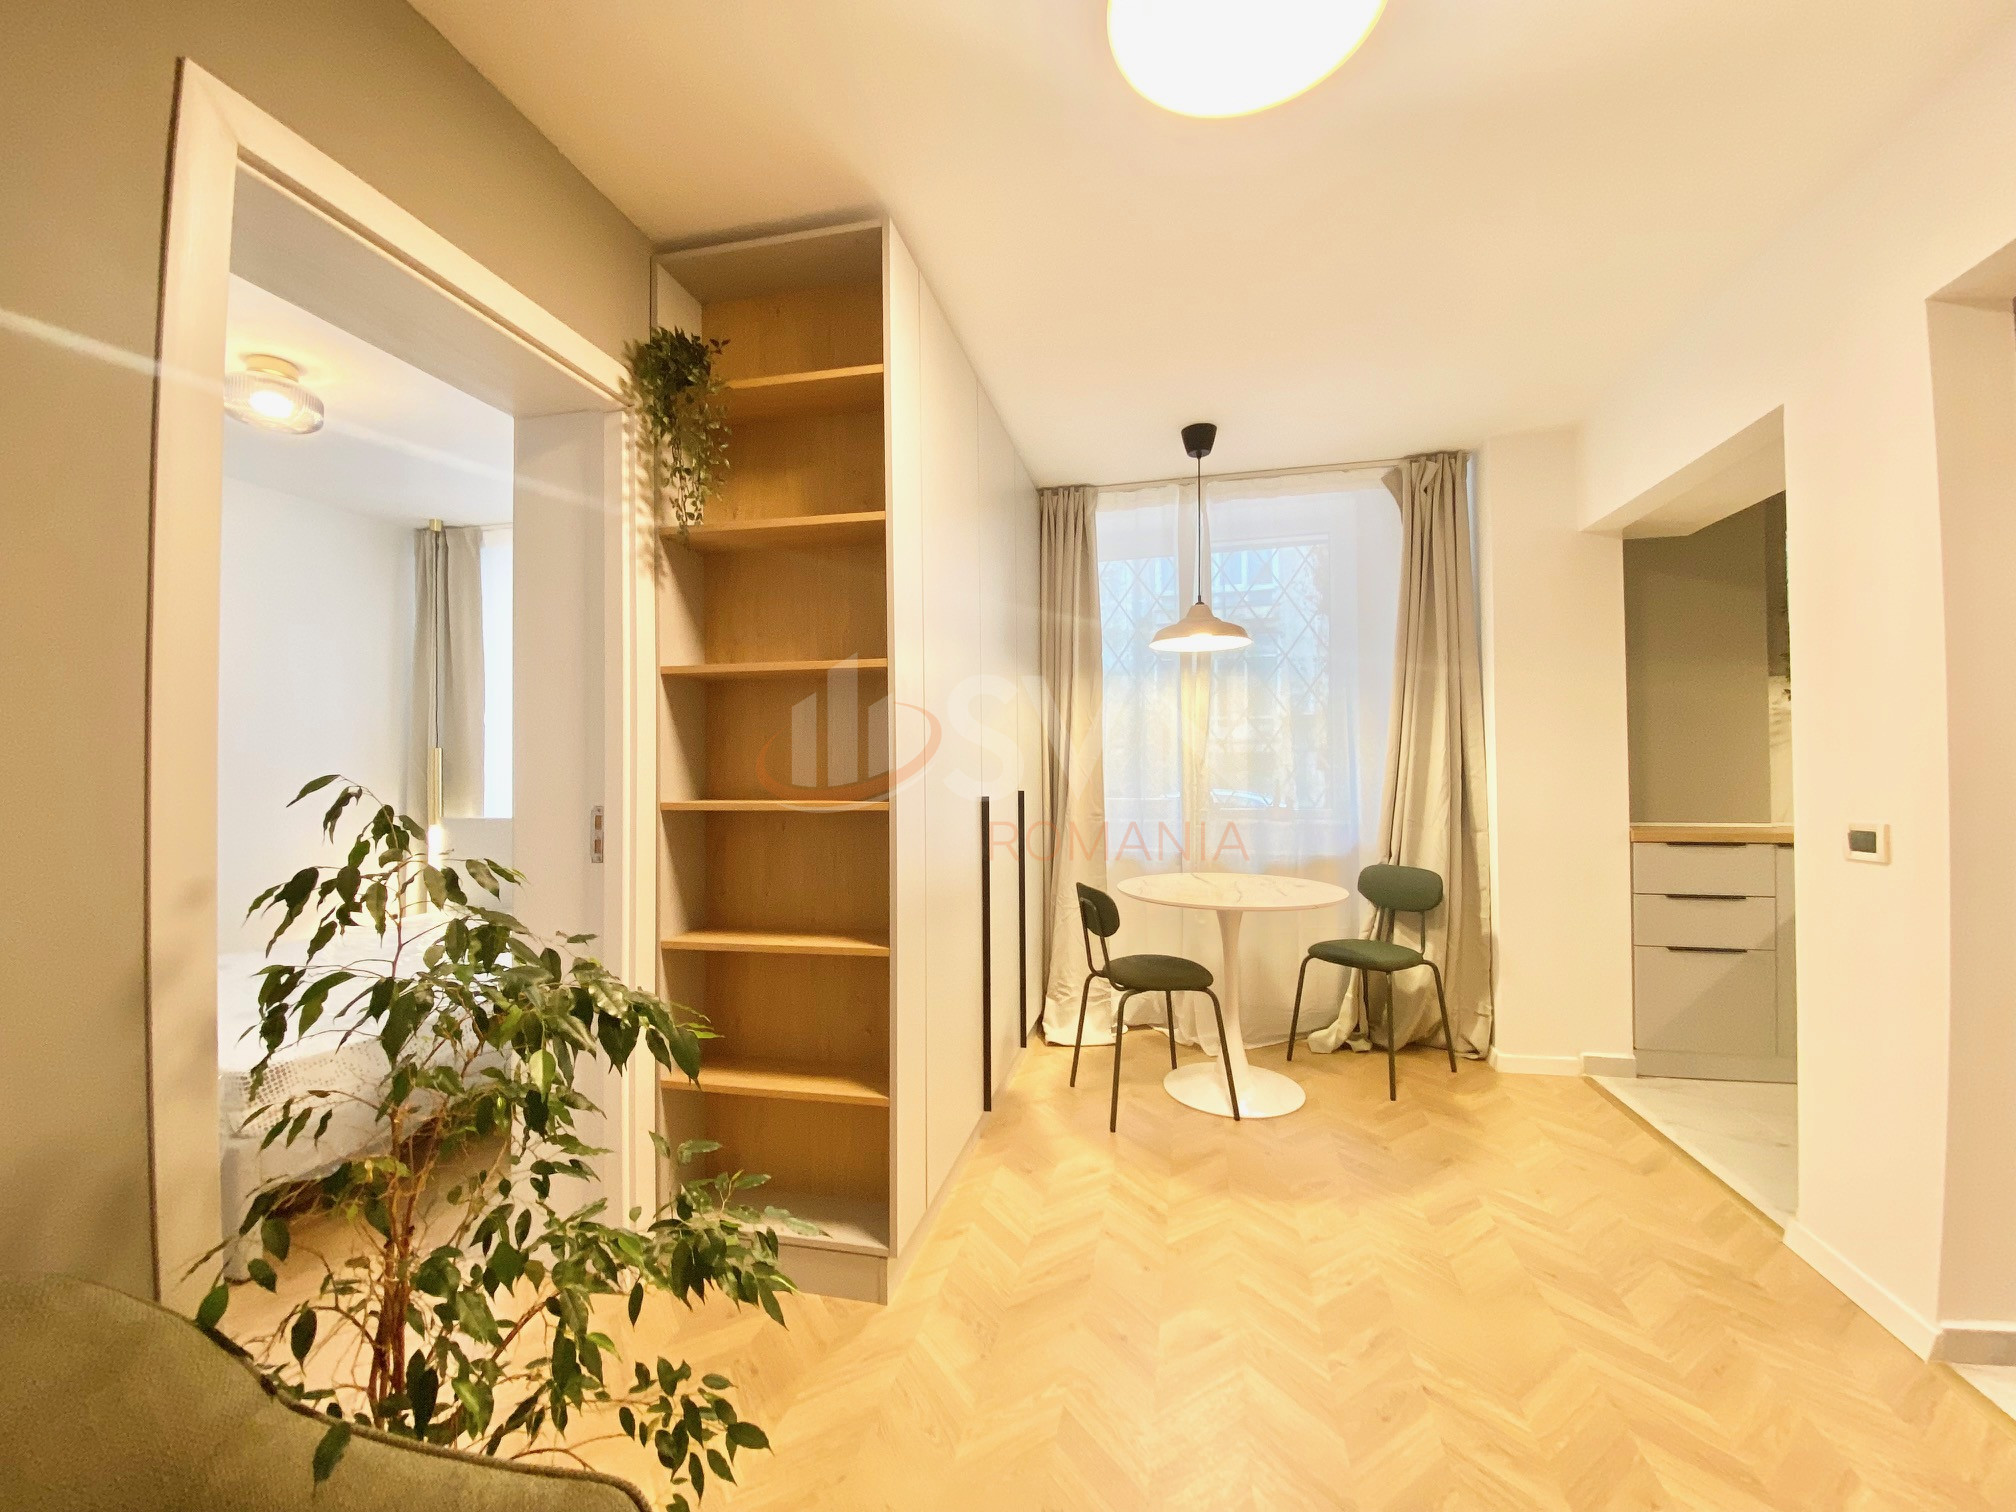 Apartament, 2 camere Bucuresti/Floreasca